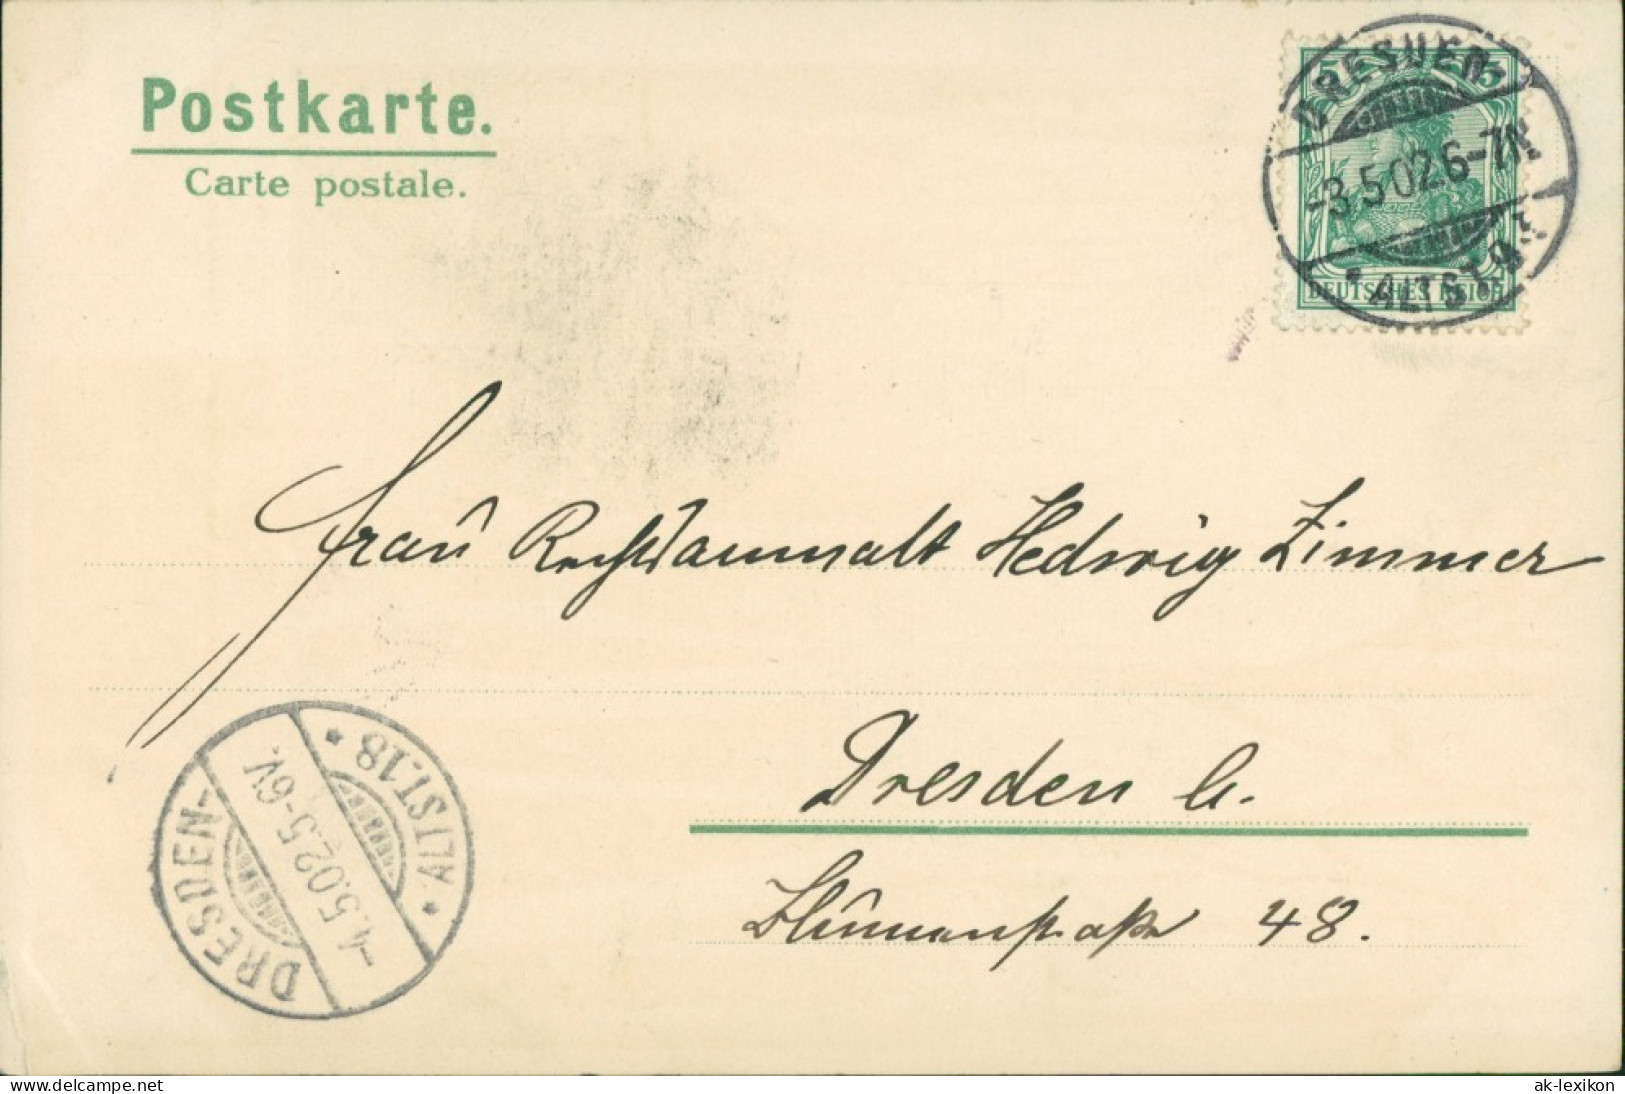  Partie Im Birkenwald - Künstlerkarte Erik Mailick 1905 Mailick:  - 1900-1949